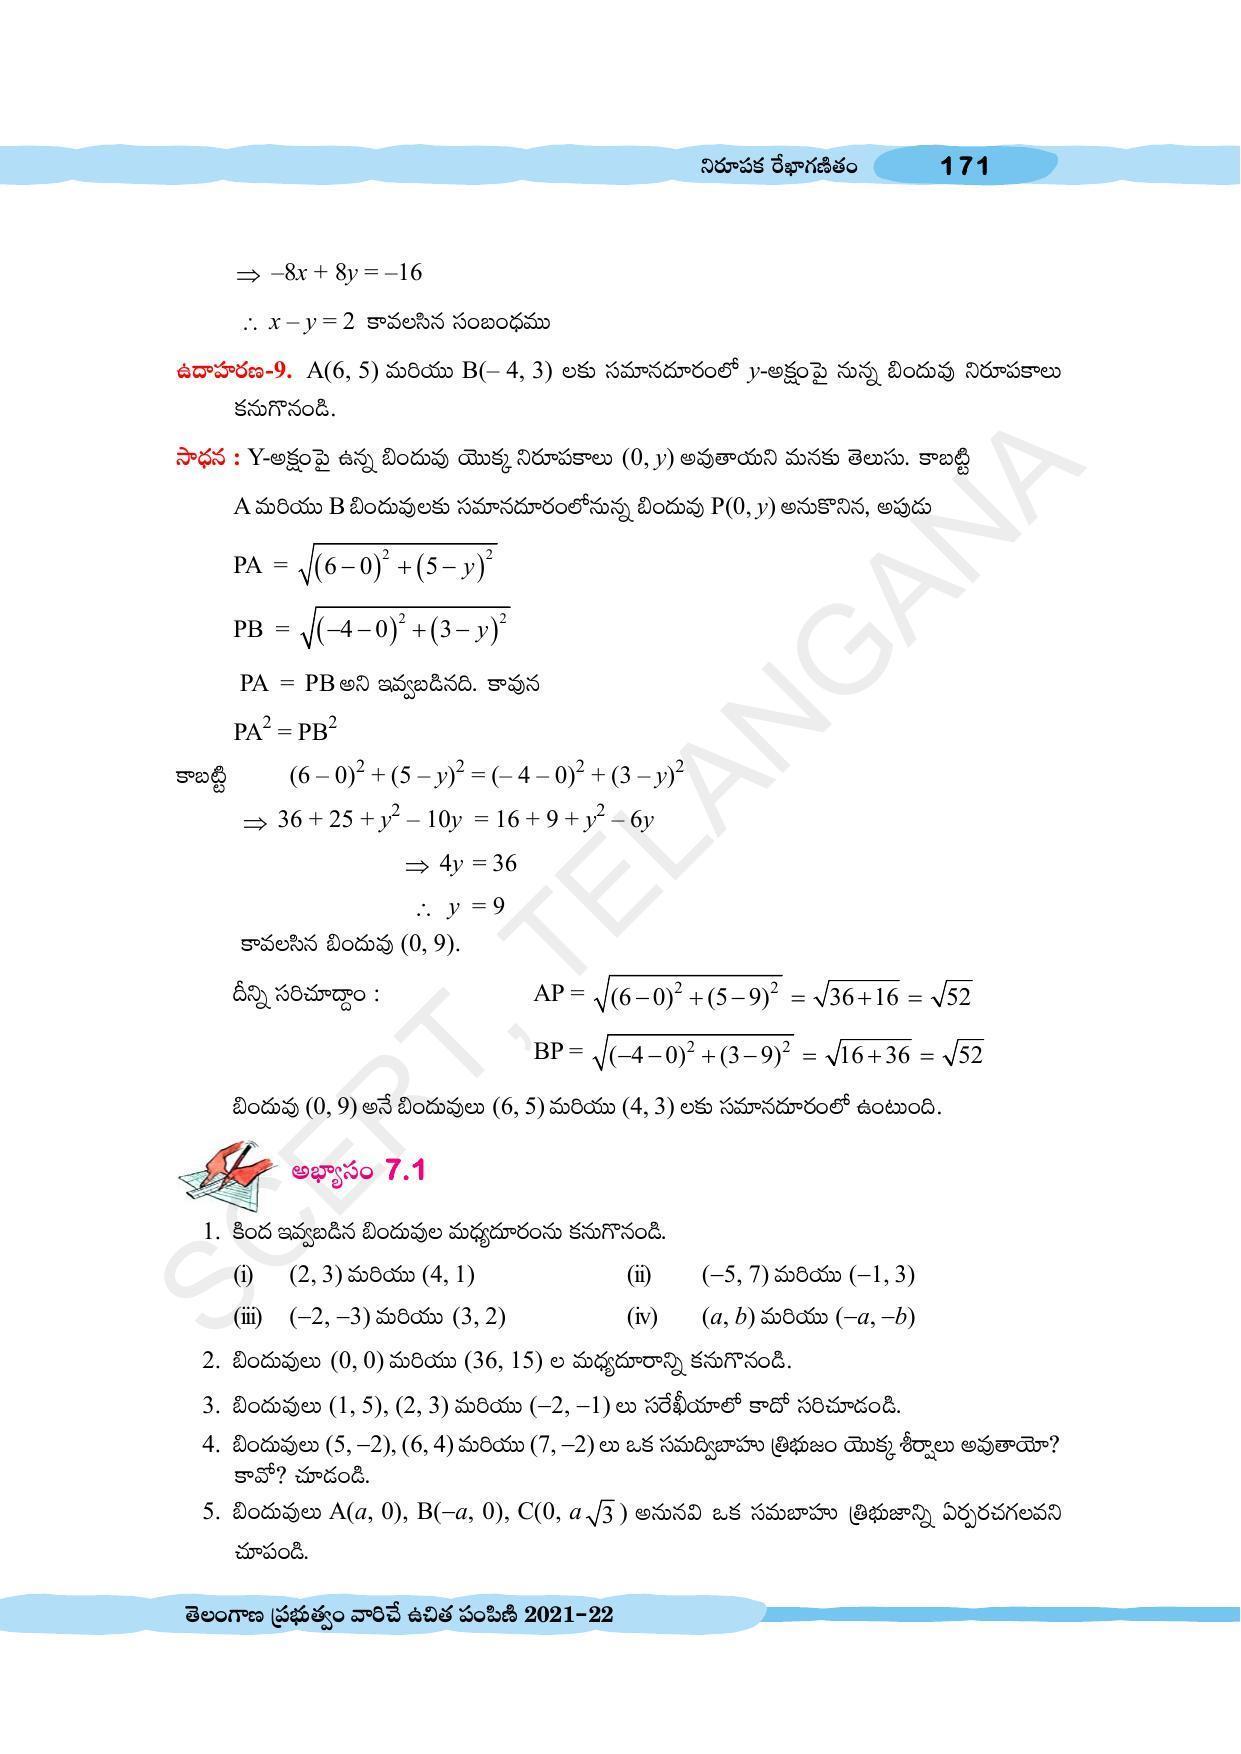 TS SCERT Class 10 Maths (Telugu Medium) Text Book - Page 181